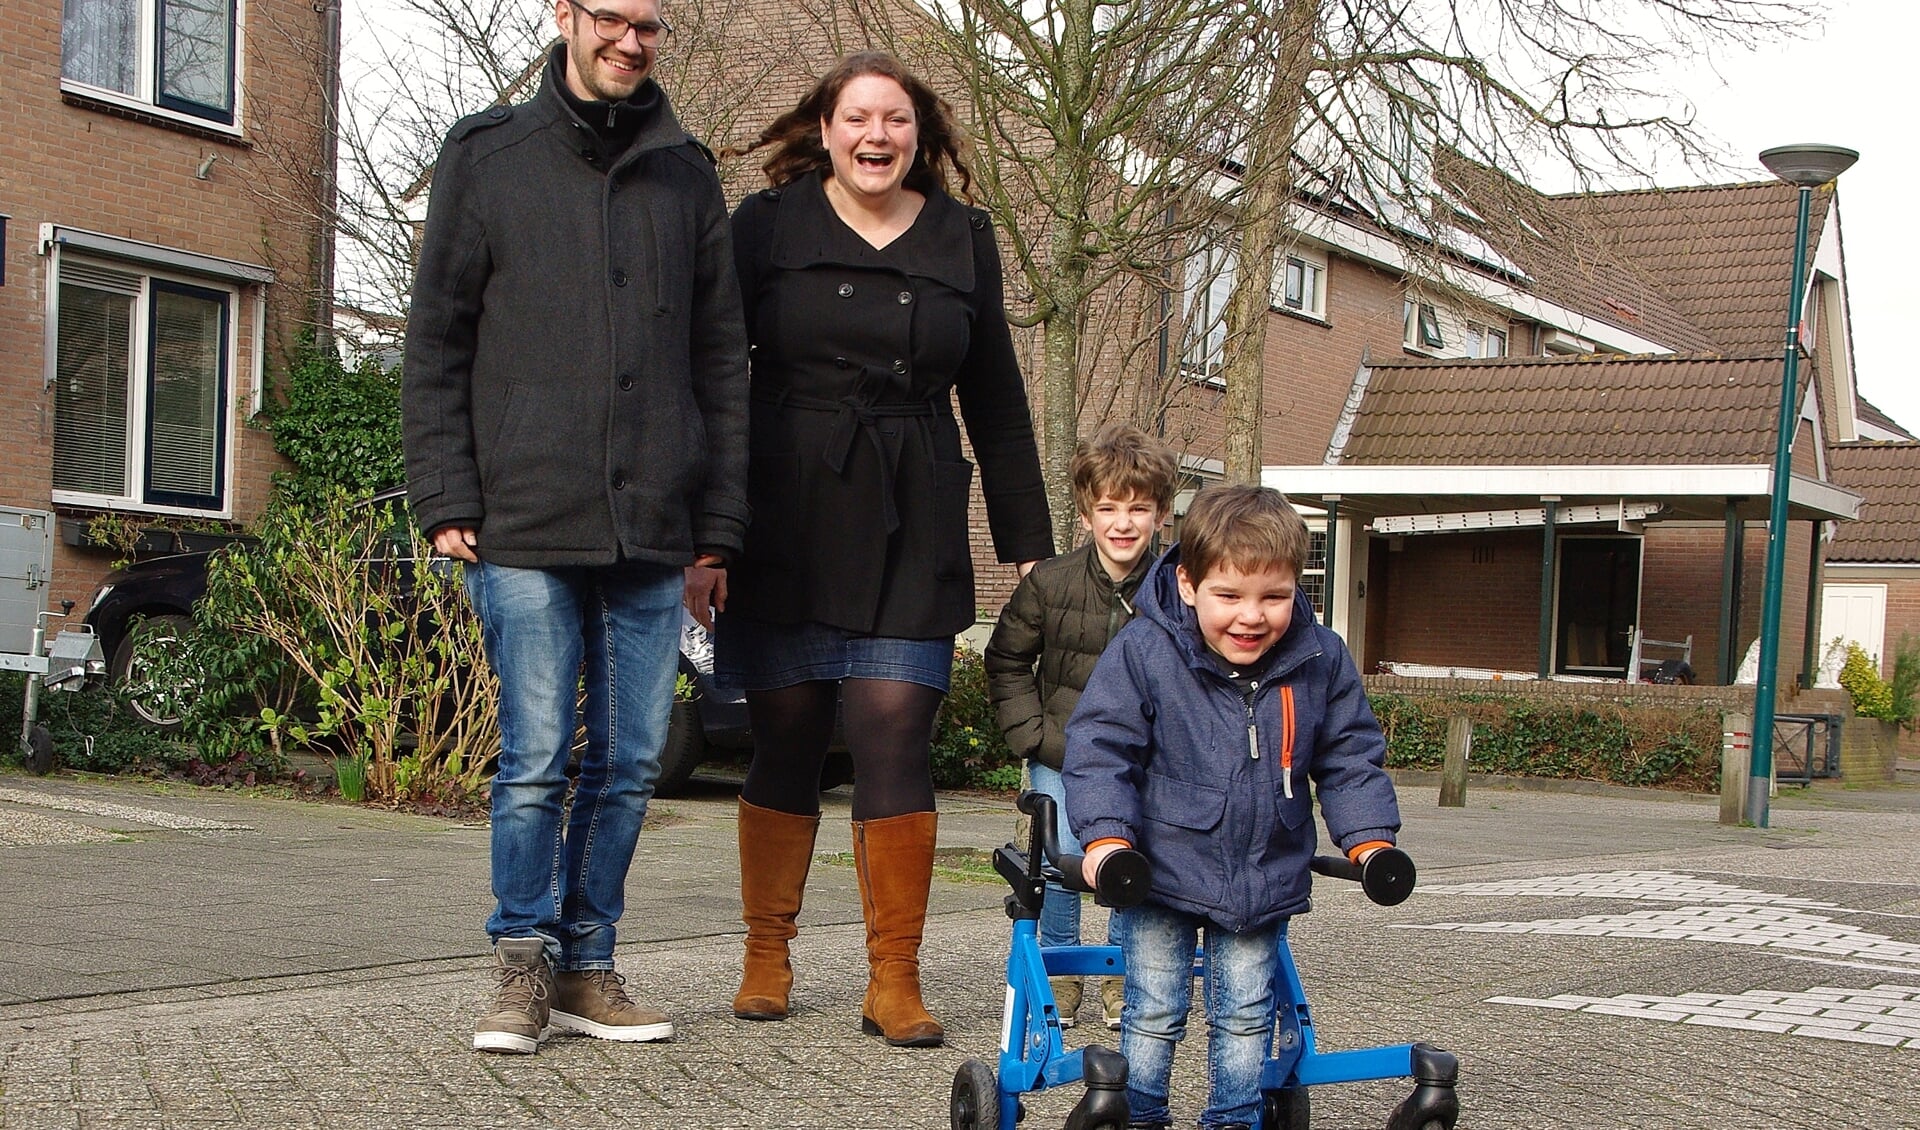 Joost, Karin en Joris kijken toe terwijl Tobias ervandoor gaat met zijn rollator. | Foto Willemien Timmers